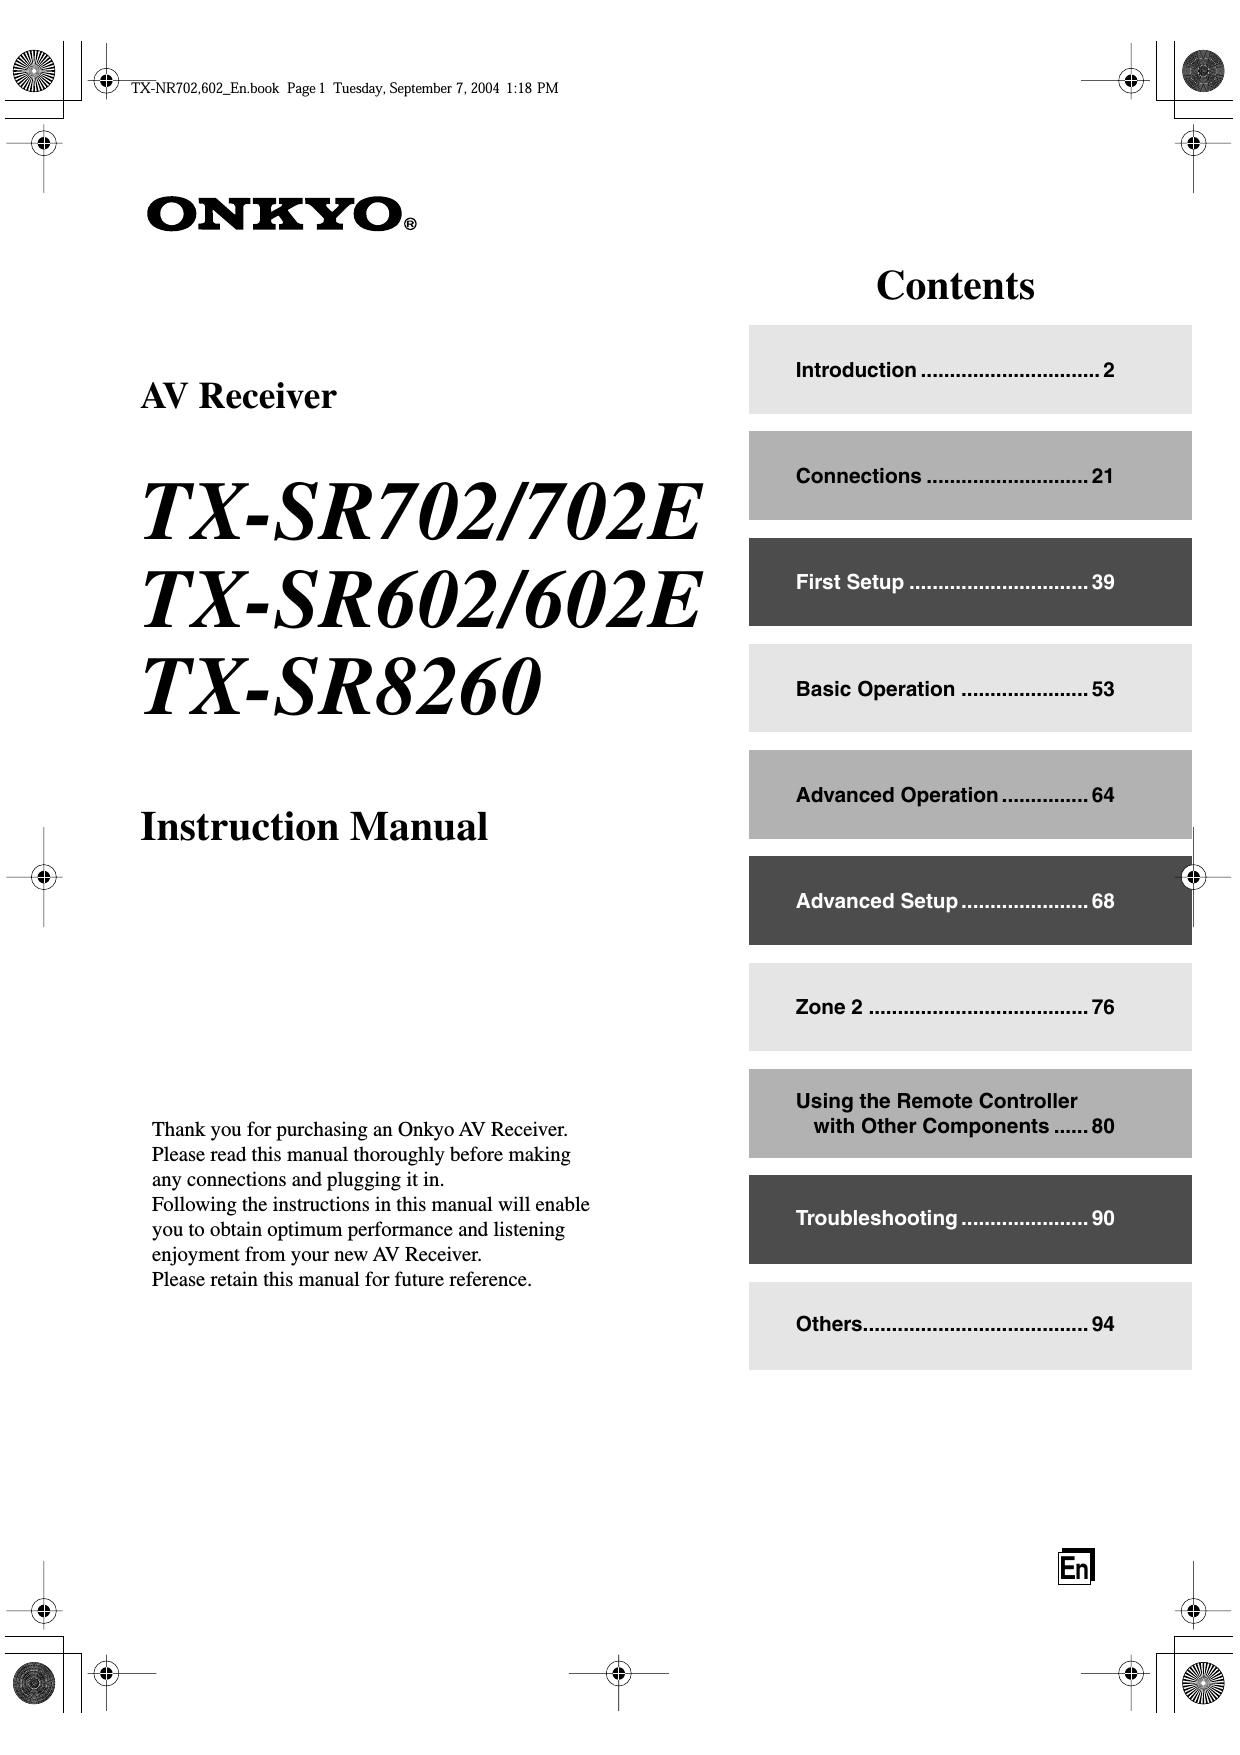 Onkyo TXSR 8260 Owners Manual